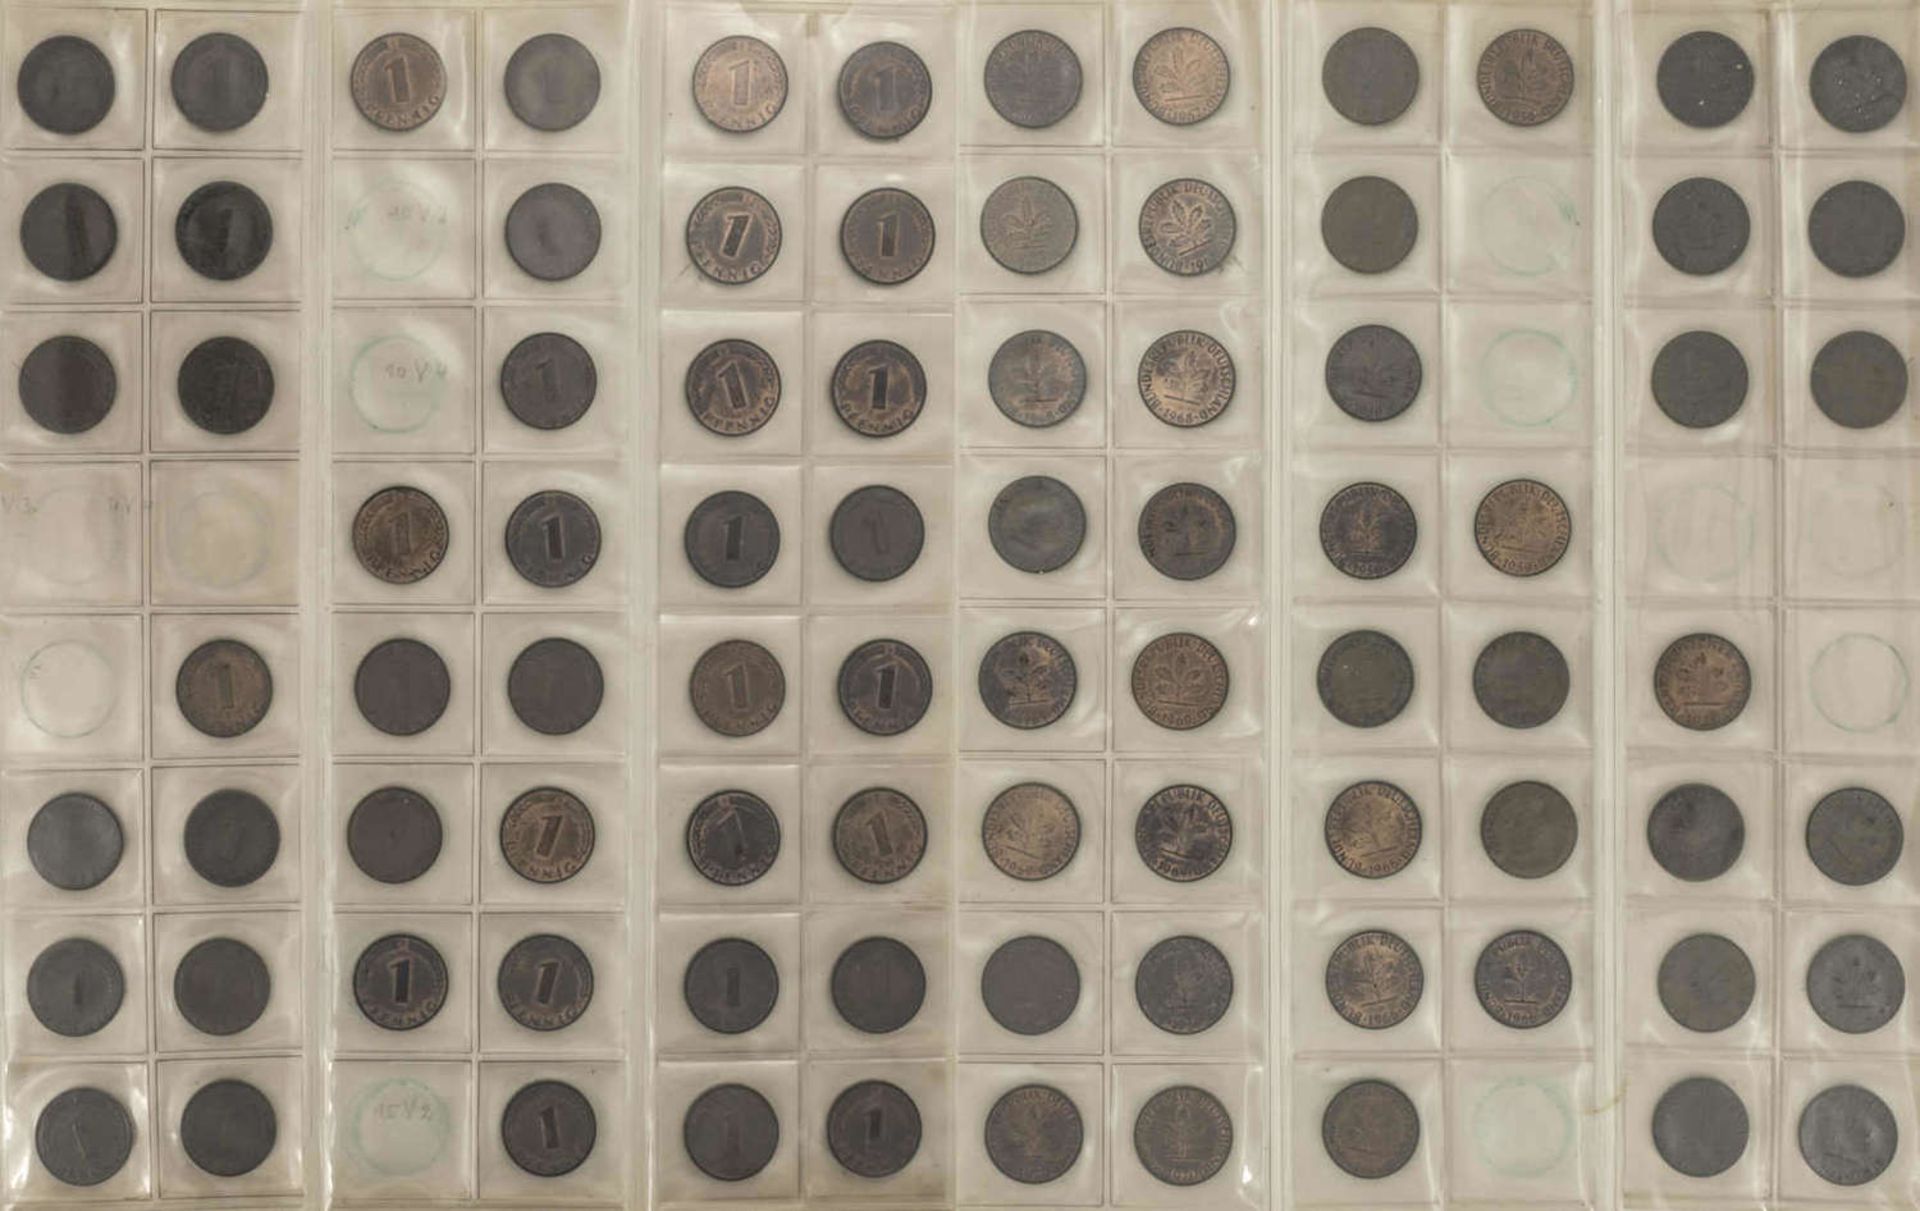 BRD 1948/81, Münzsammlung 1-, 2-, 5- und 10 Pfennig. Dabei 1 Pfennig: 1948/50 DFGJ, 1966 - 80 DFGJ